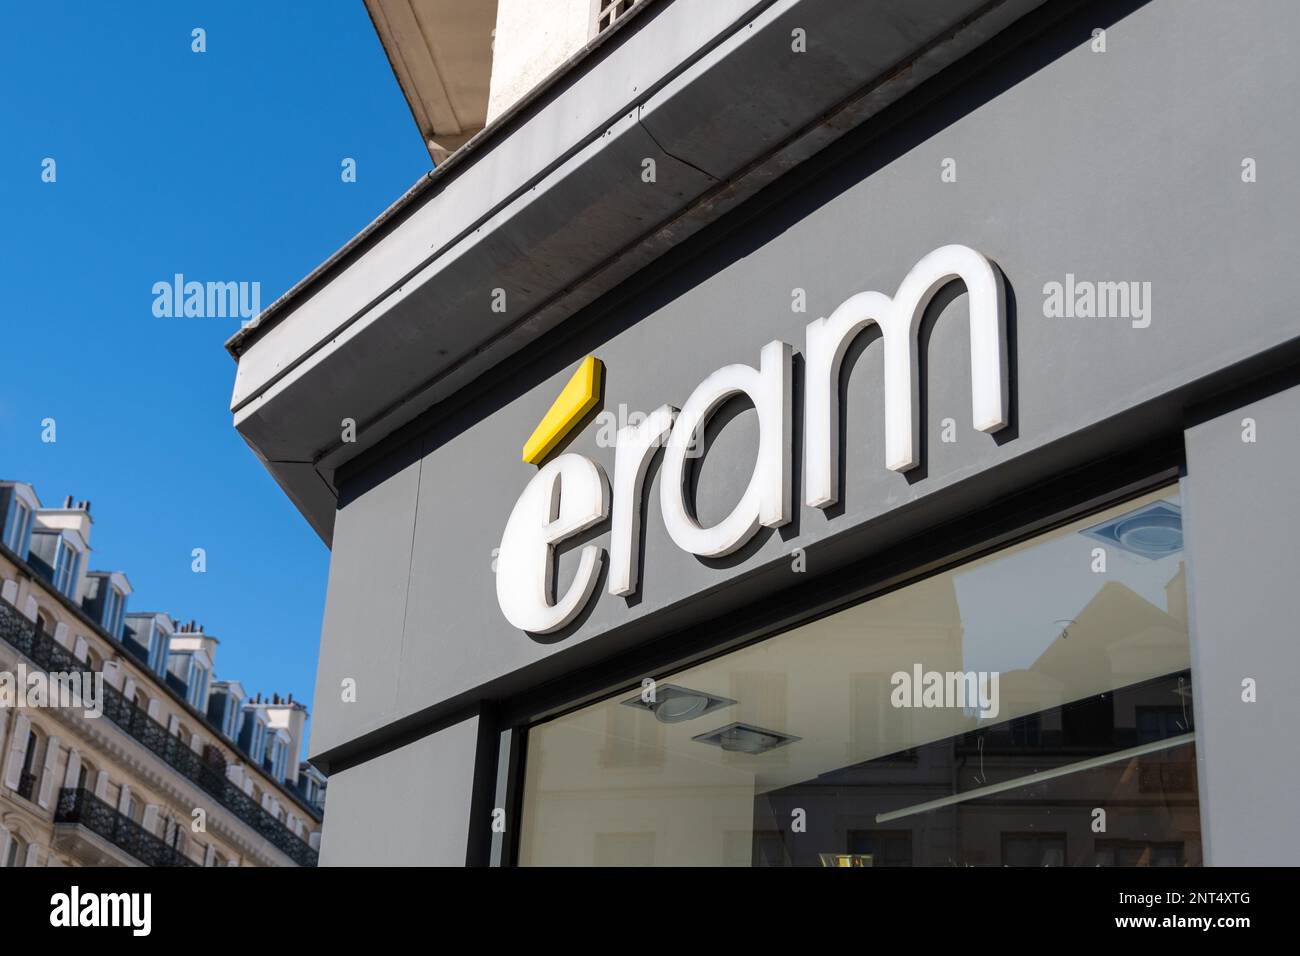 Signe commercial d'une boutique Eram, une société de distribution française spécialisée dans les chaussures et les vêtements Banque D'Images